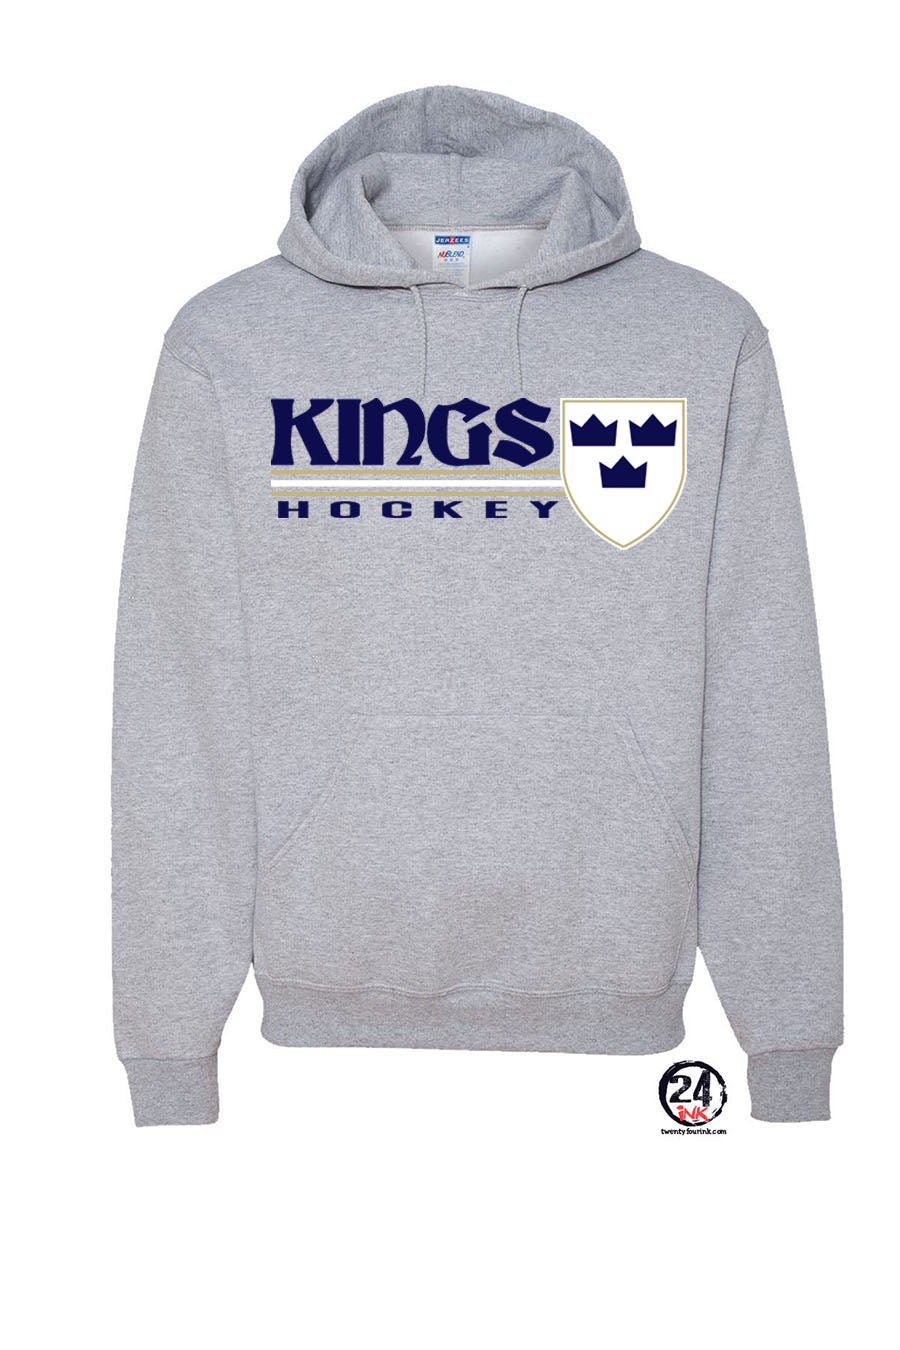 Kings Hockey Design 3 Hooded Sweatshirt